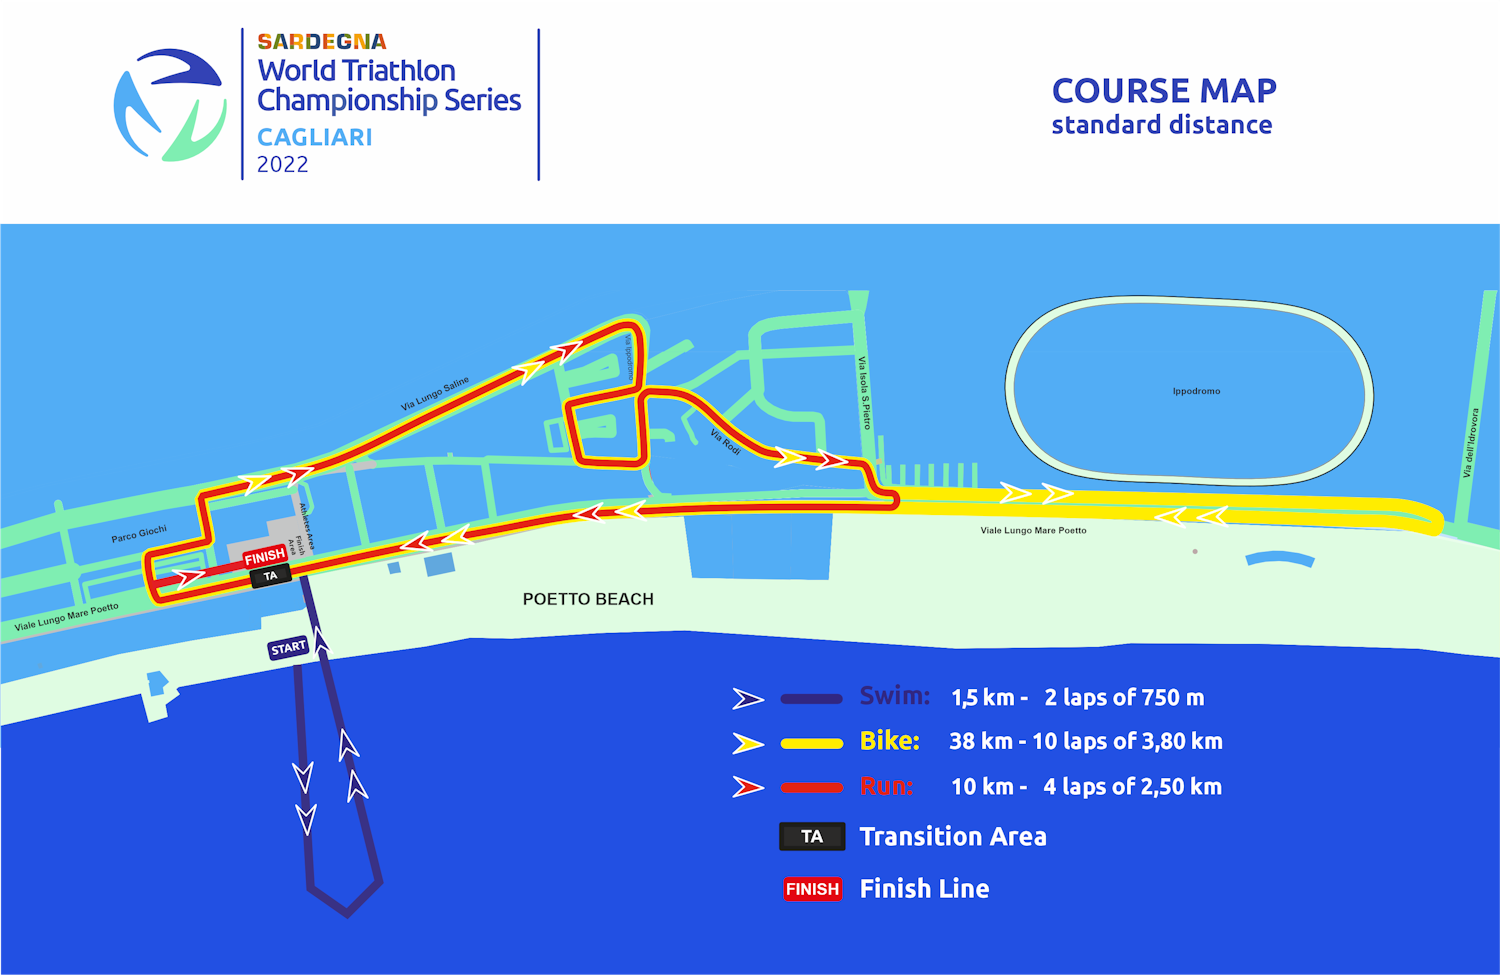 Cagliari Course Map